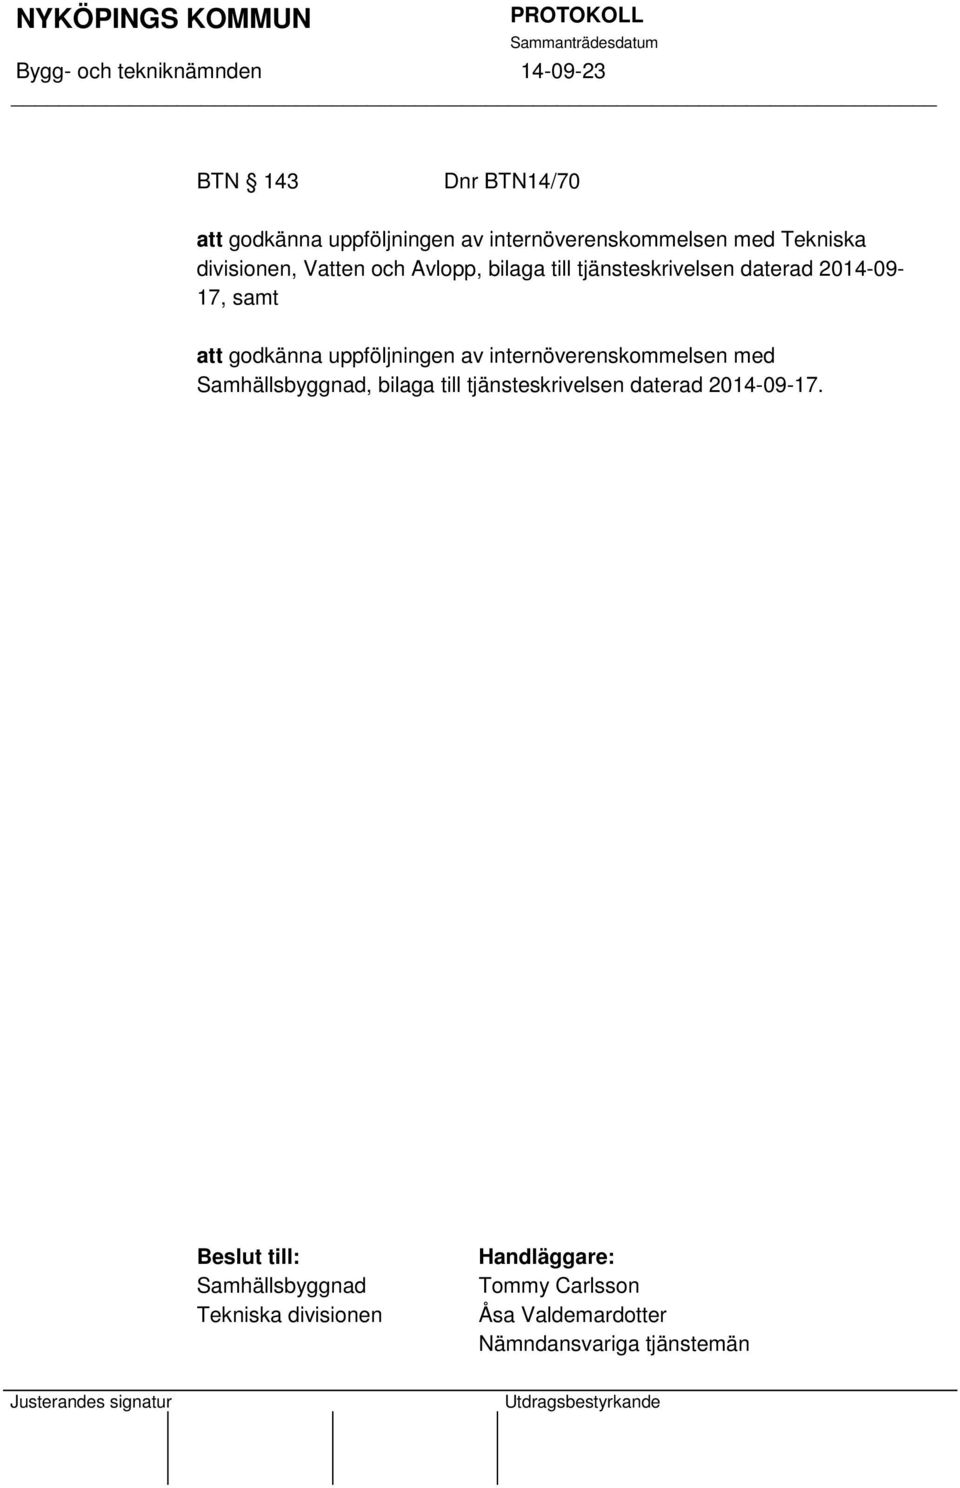 internöverenskommelsen med Samhällsbyggnad, bilaga till tjänsteskrivelsen daterad 2014-09-17.